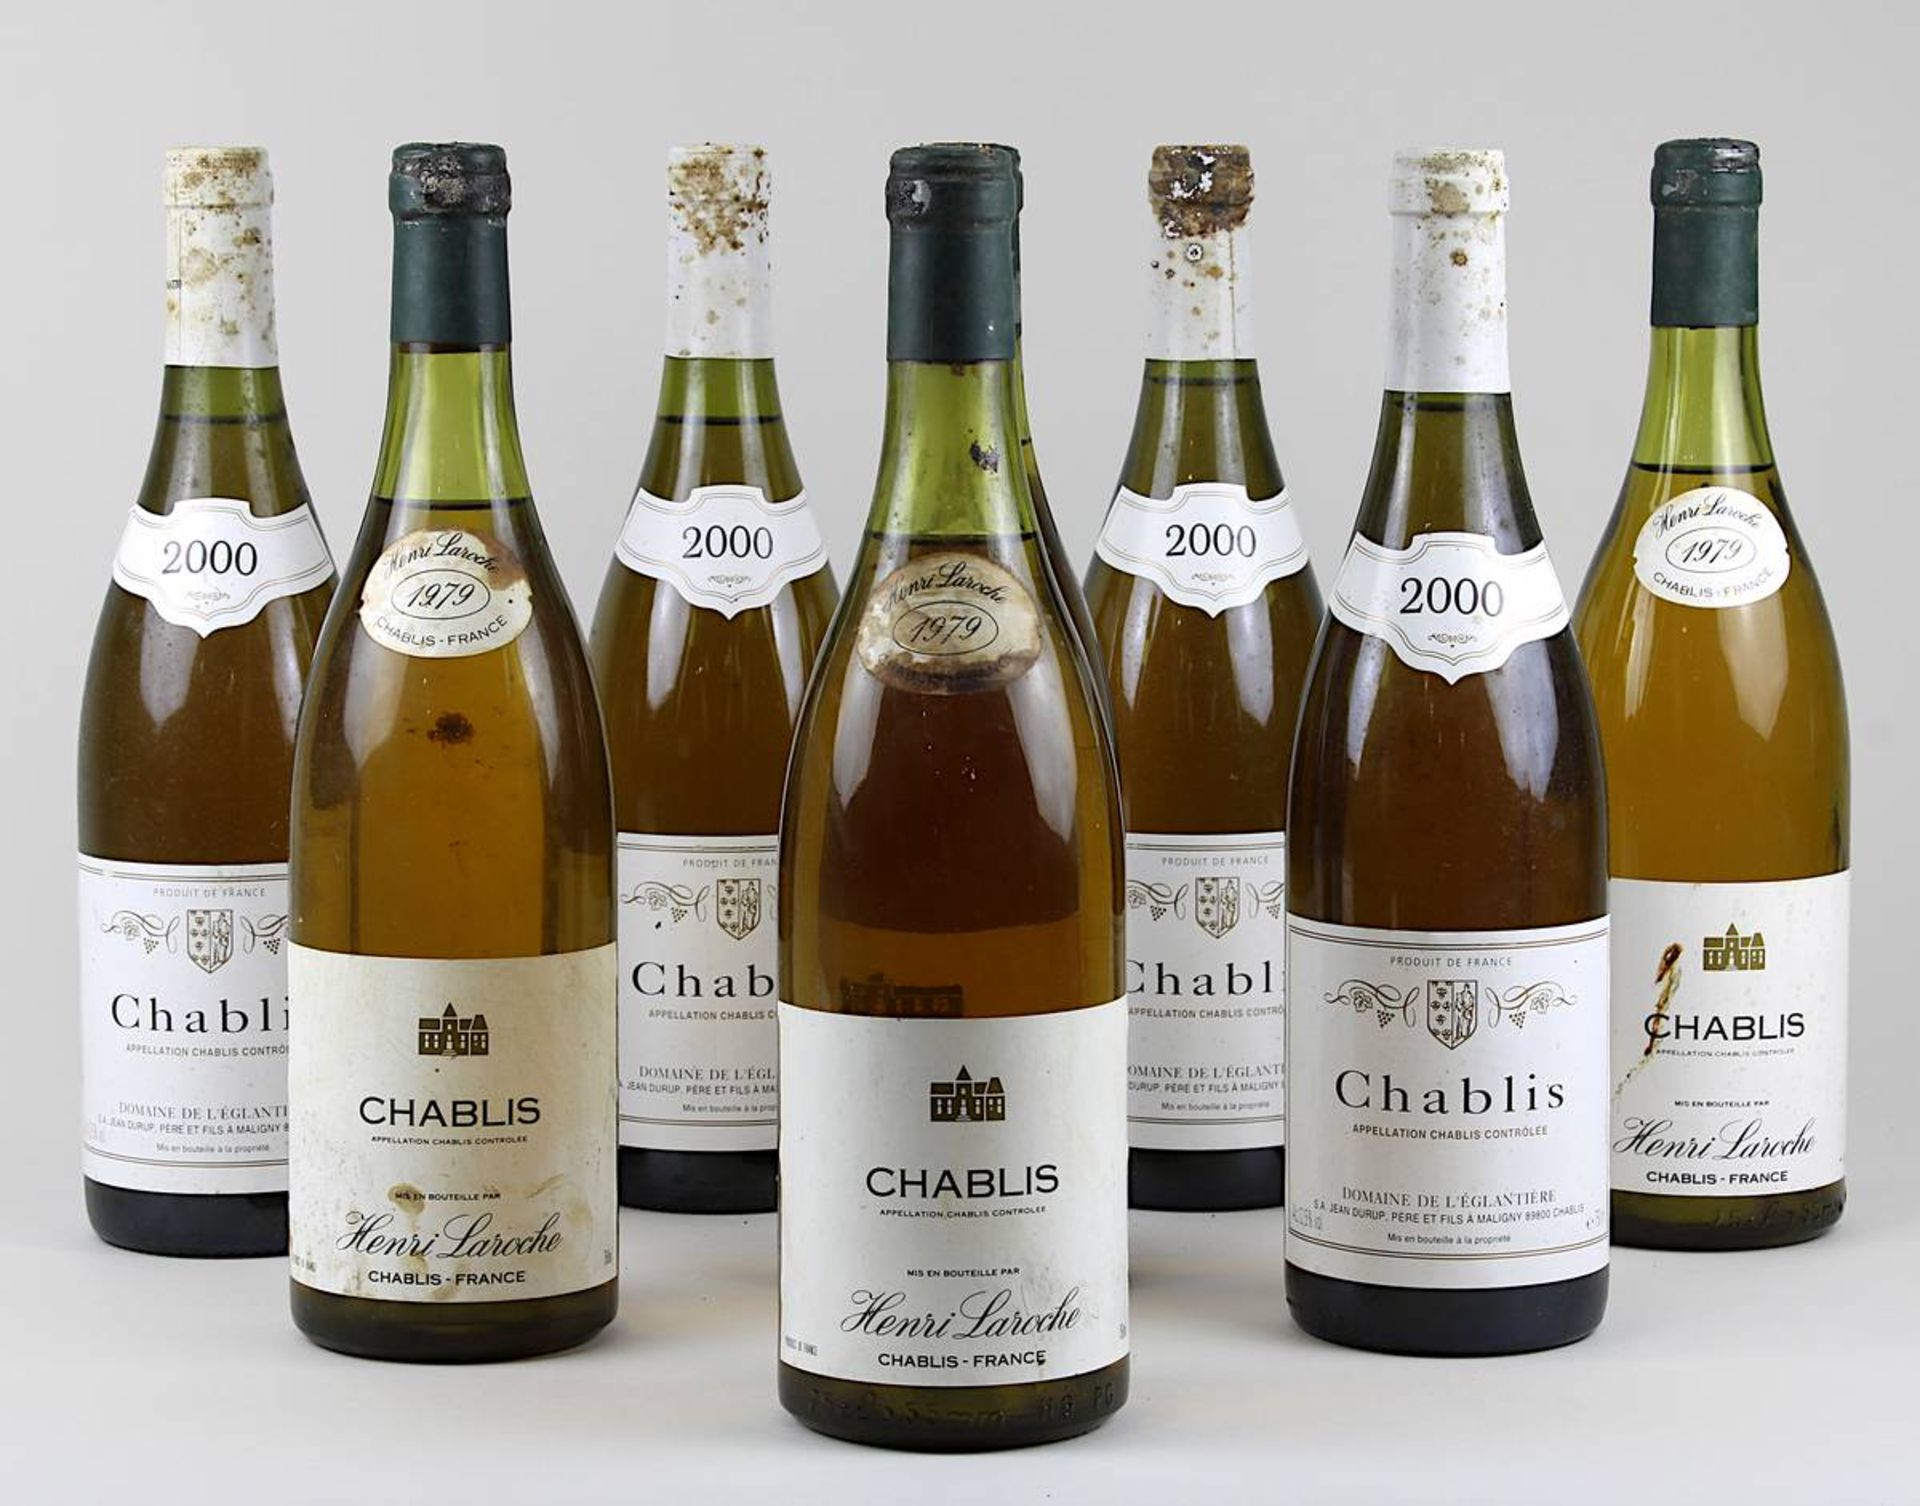 Acht Flaschen Chabli: vier Flaschen 1979er Henri Laroche, vier Flaschen 200er Chablis Domaine de l'